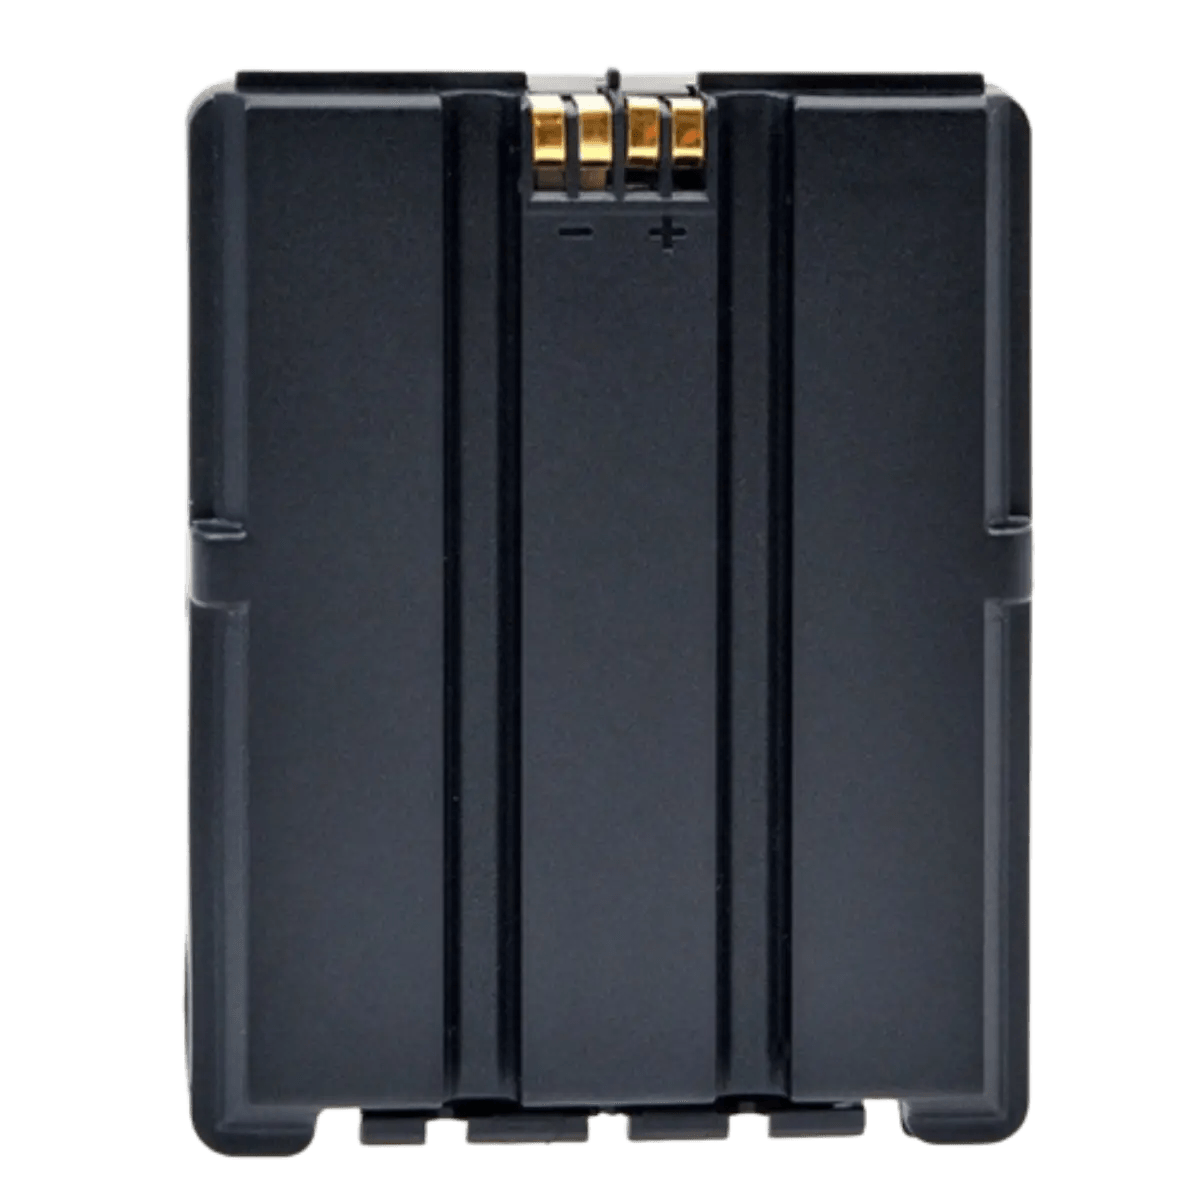 Batterie BatLi30 Daitem: pour détecteurs de mouvement SH195AX et SH196AX